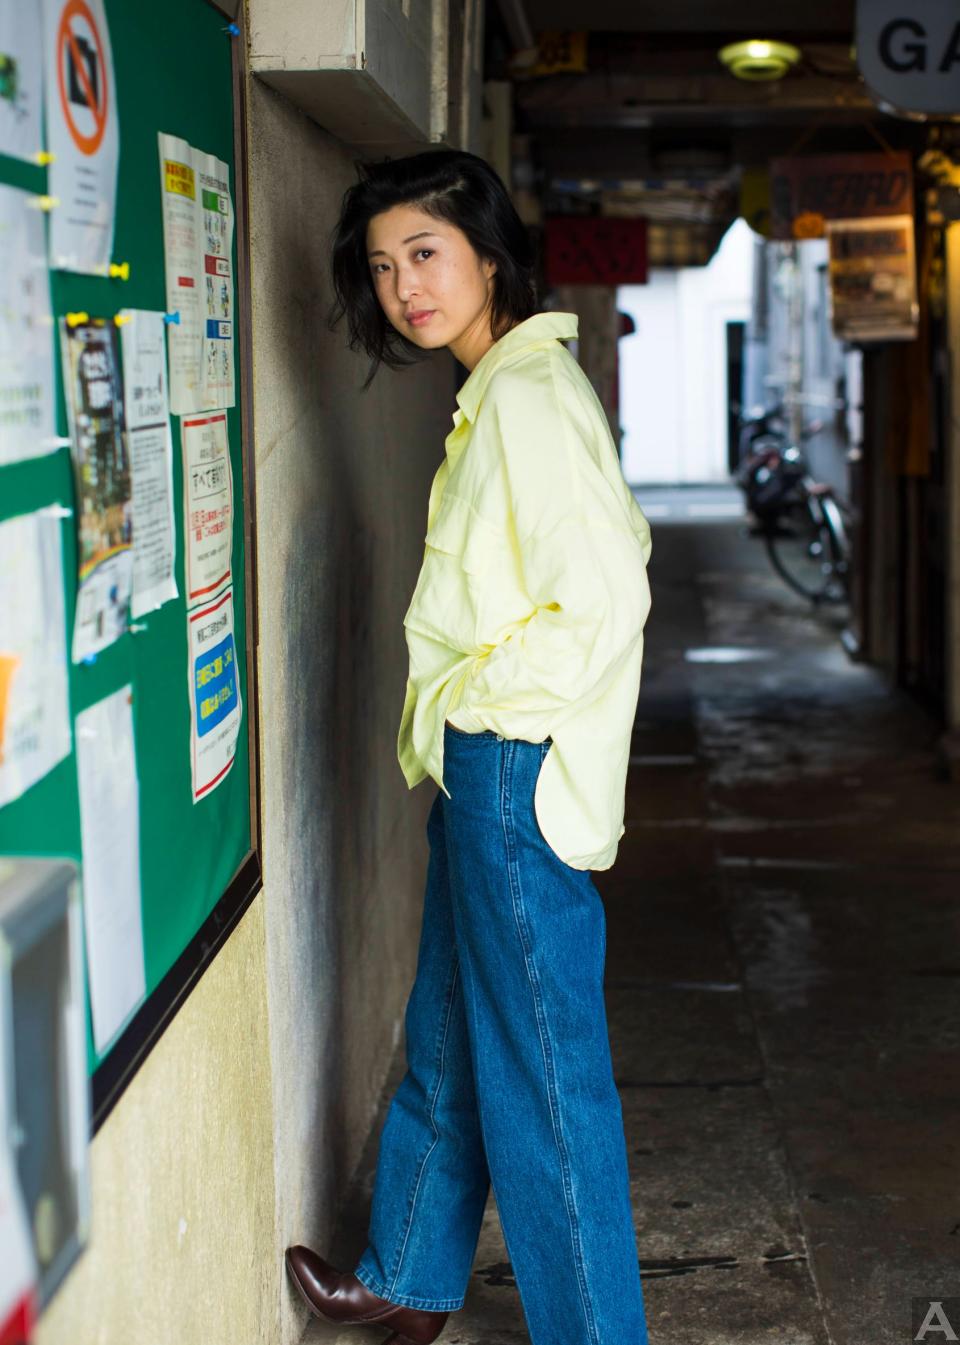 東京外国人モデル事務所アクアモデルのアジア人モデルセイラ